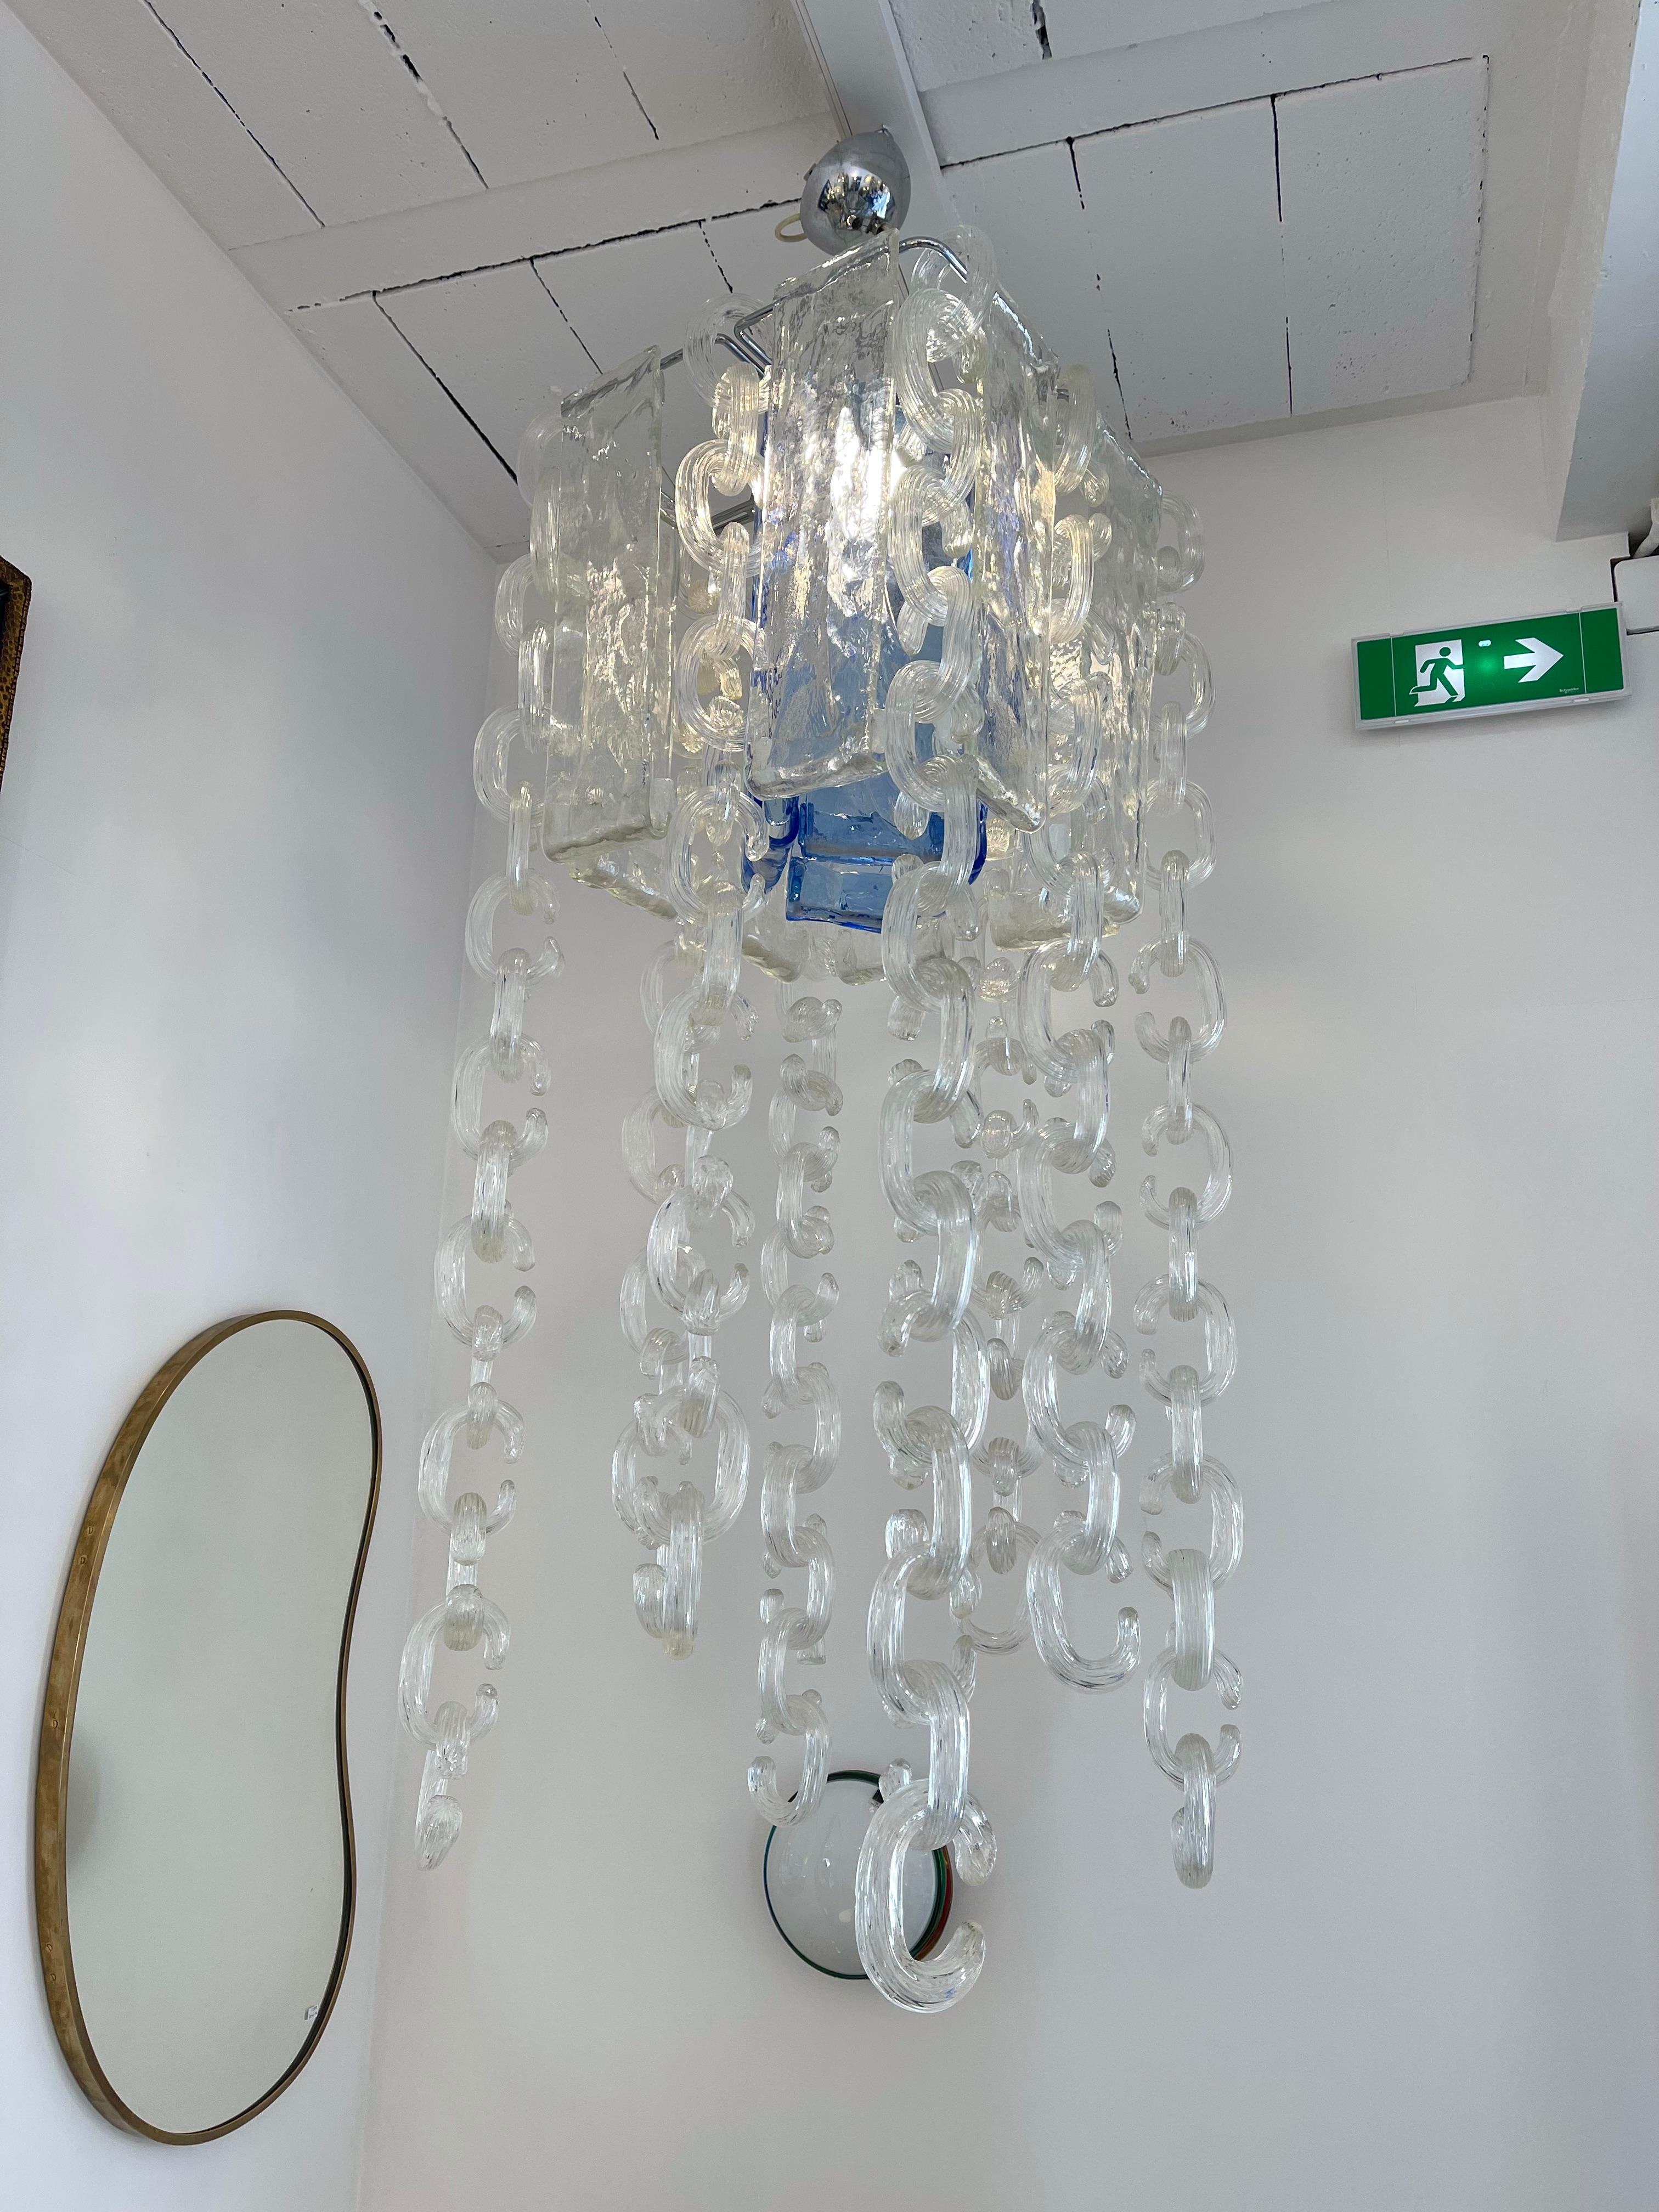 Rare chain chandelier ceiling pendant light lamp with blue Murano glass by Fratelli Toso. Famous manufacture like Venini, Vistosi, La Murrina, Seguso, Carlo Aldo Nason for Mazzega, Poliarte, Barovier, Veronese.